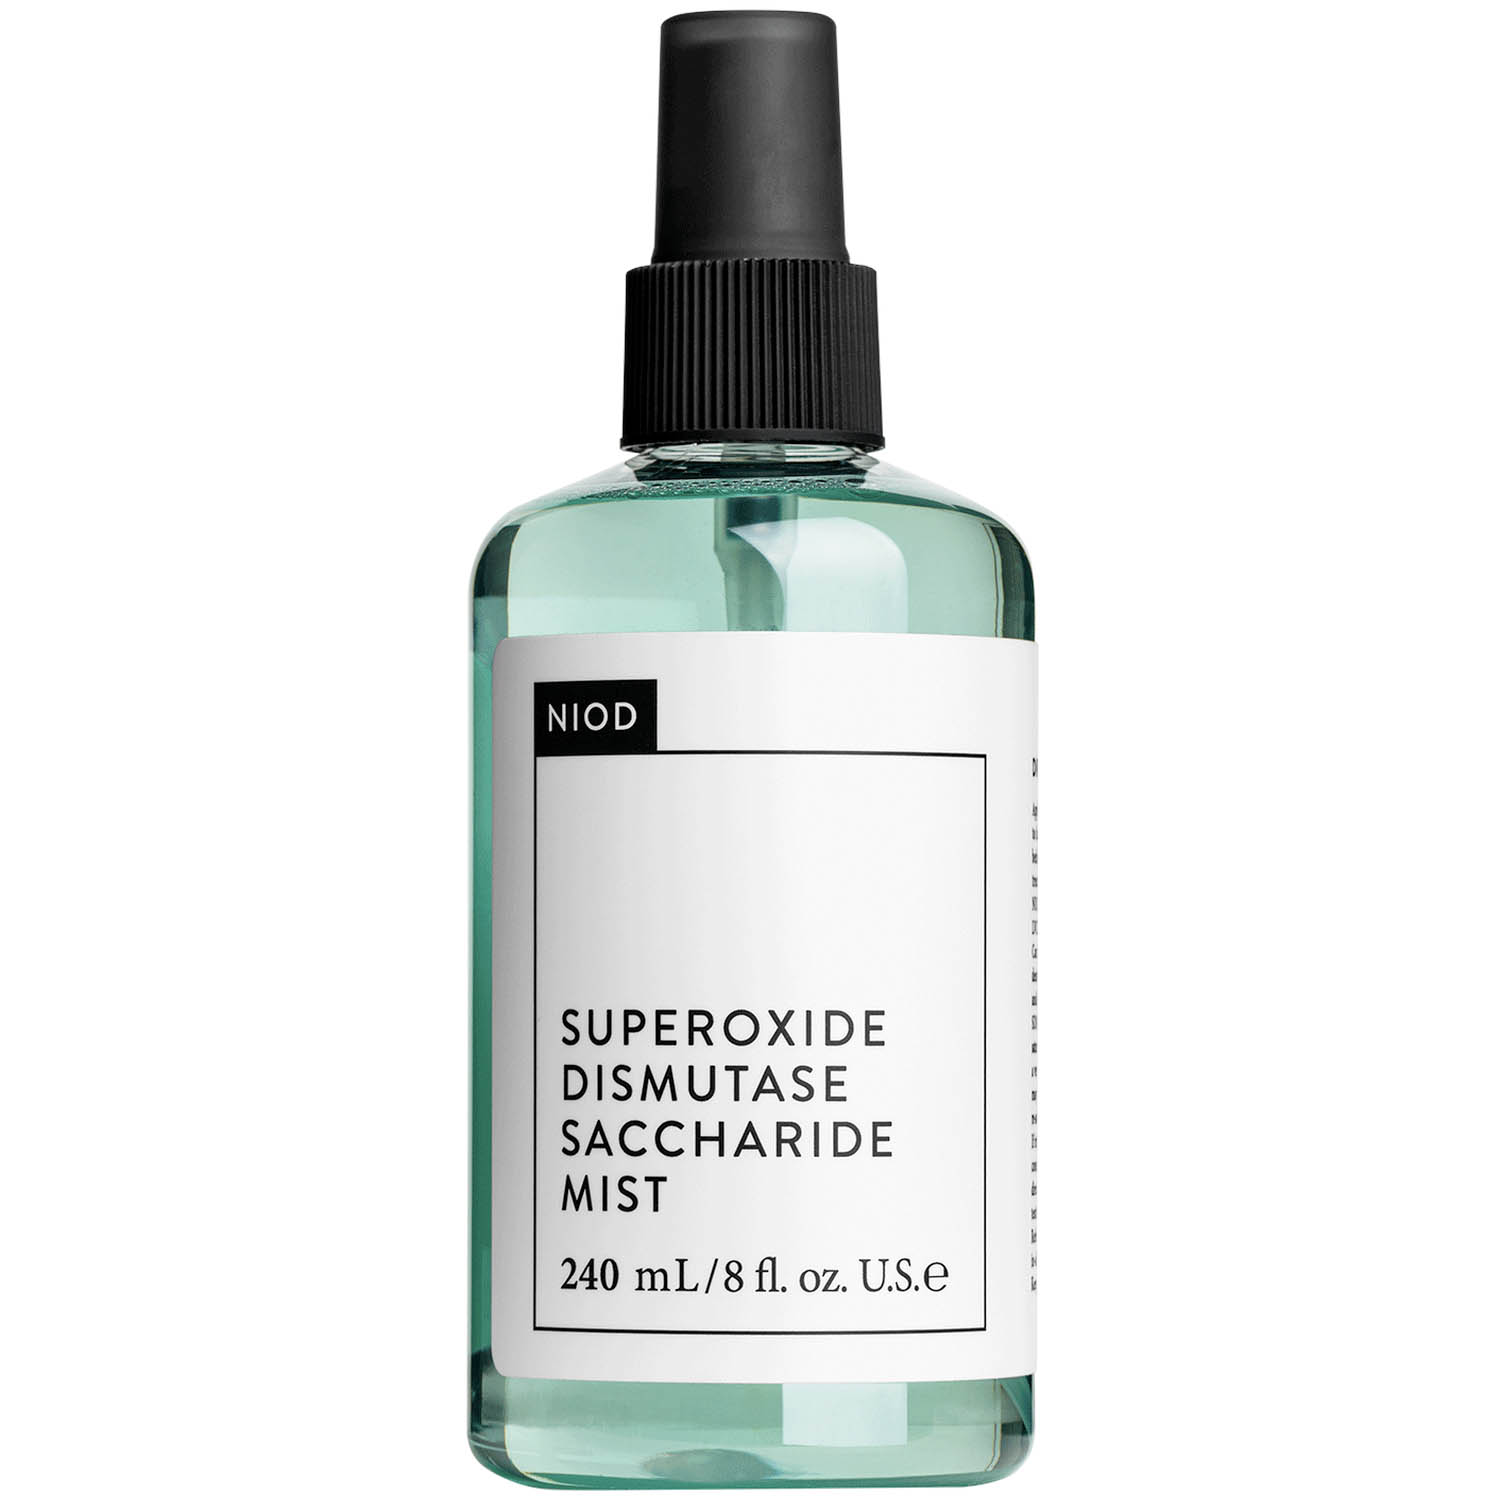 NIOD SDSM2 Superoxide Dismutase Saccharide Mist Facial Spray kaufen Deutschland bestellen Shops reduziert Rabattcode Preisvergleich Coupon Code